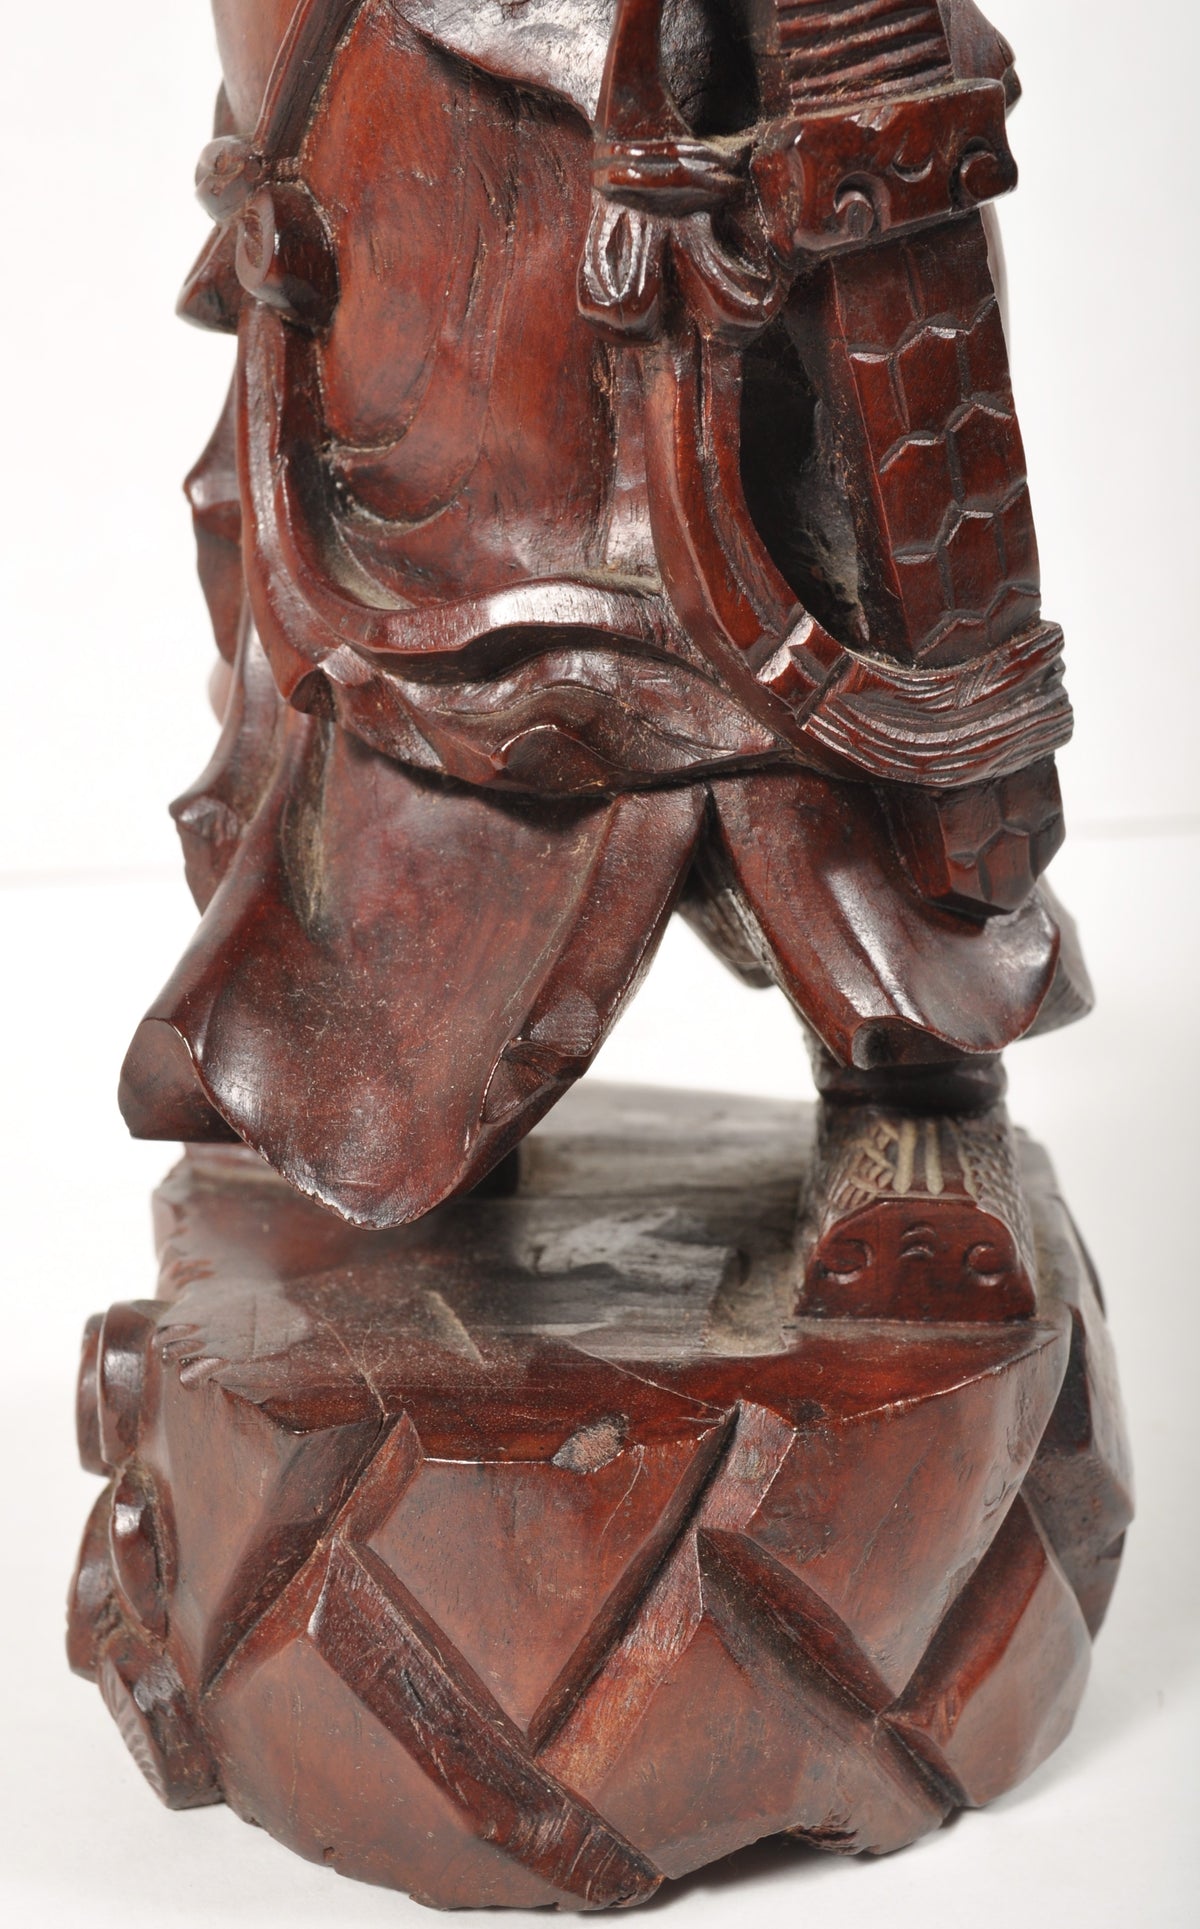 Antique Chinese Carved Wooden Warrior in Zeitan Wood, Circa 1850